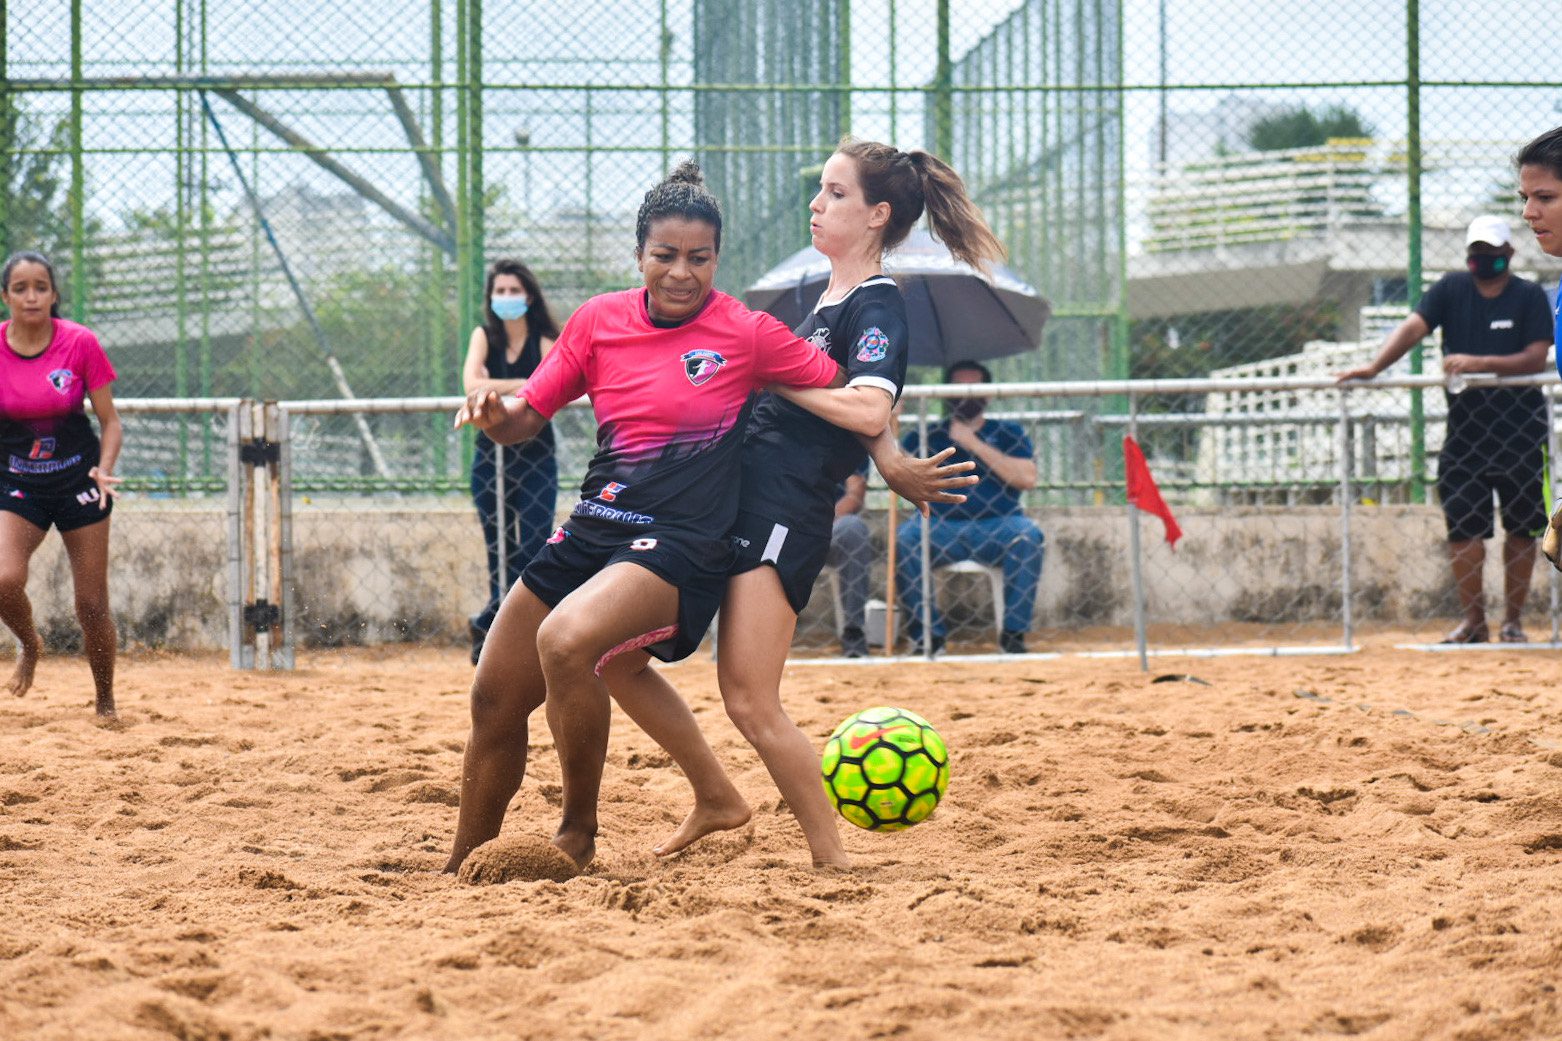 Campeonato Metropolitano de Beach Soccer neste fim de semana no Tancredão